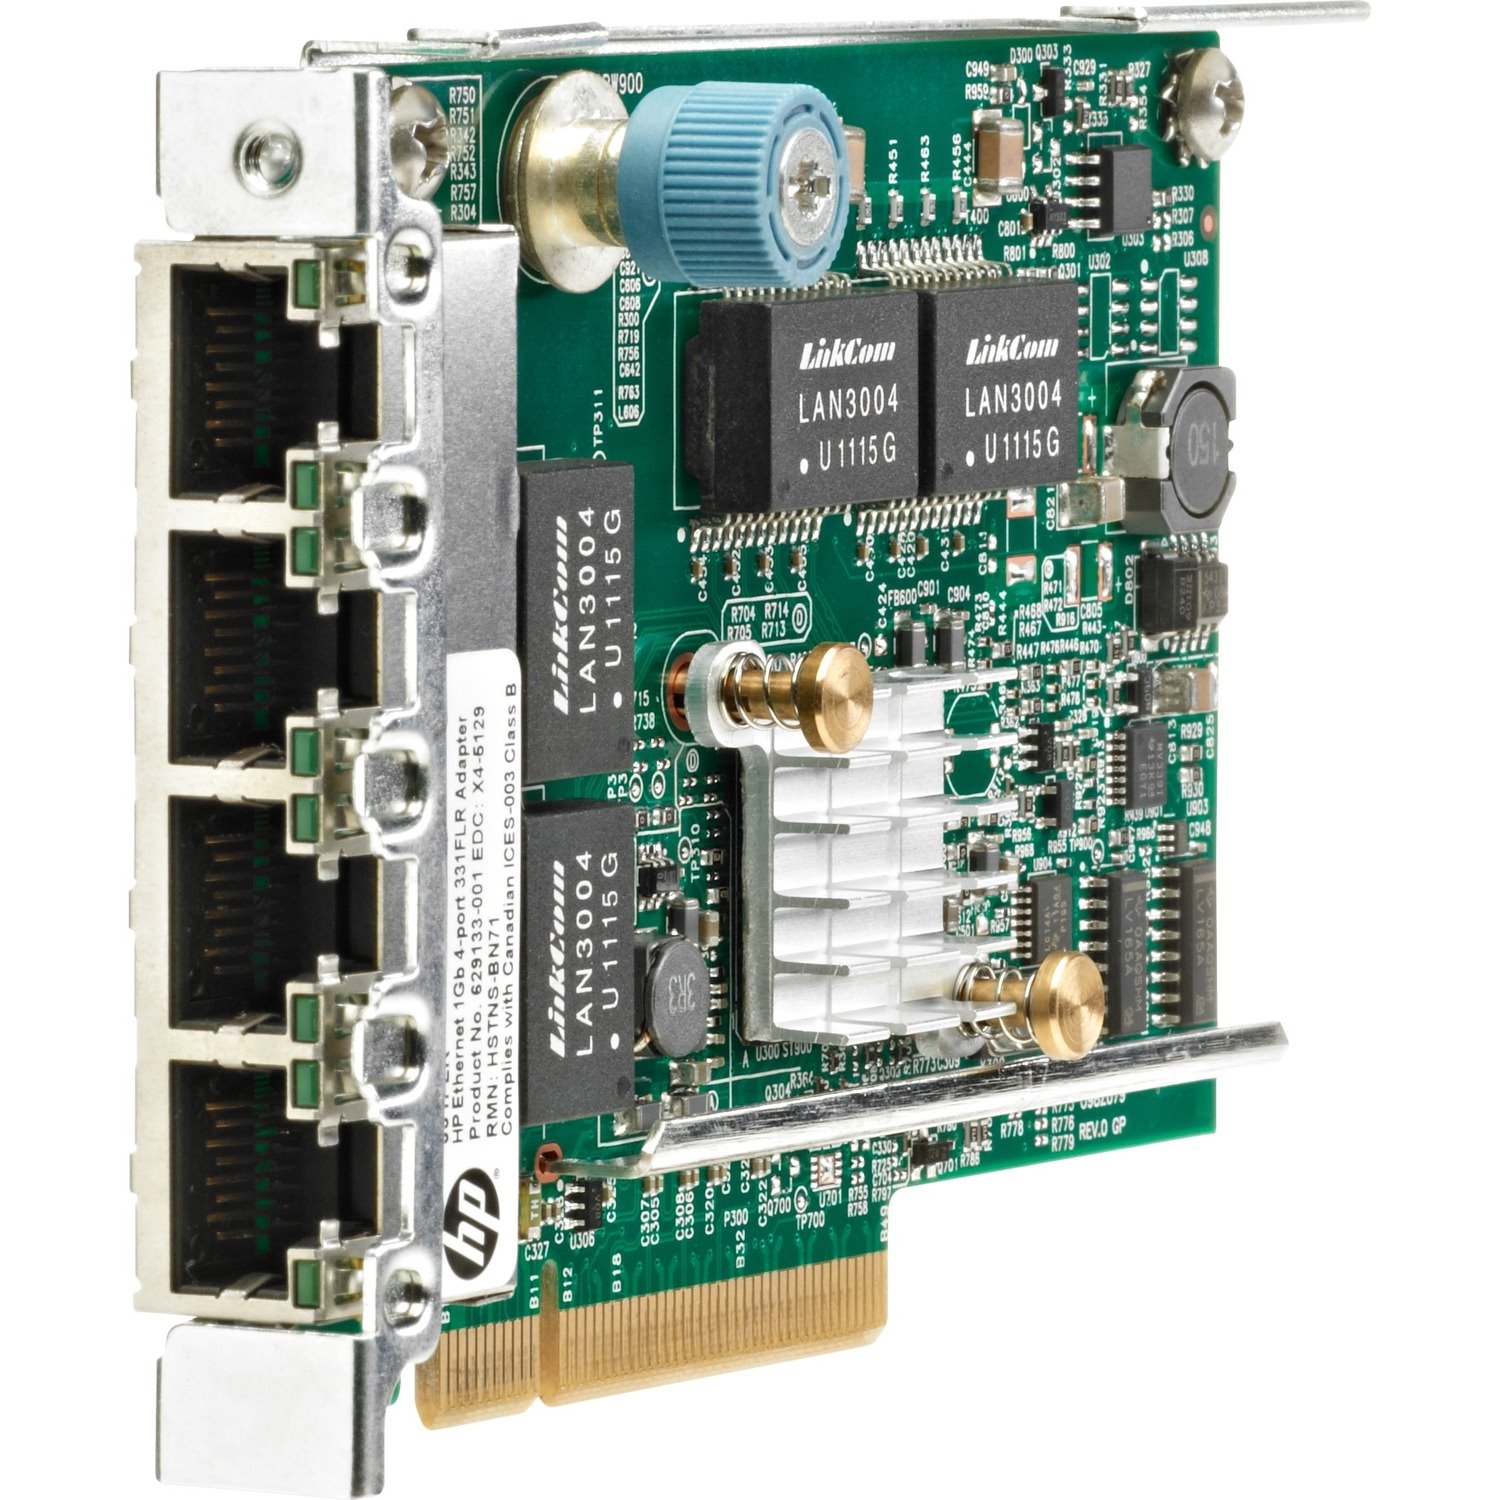 HPE 331FLR Gigabit Ethernet Card for Server - 10/100/1000Base-T - Plug-in Card